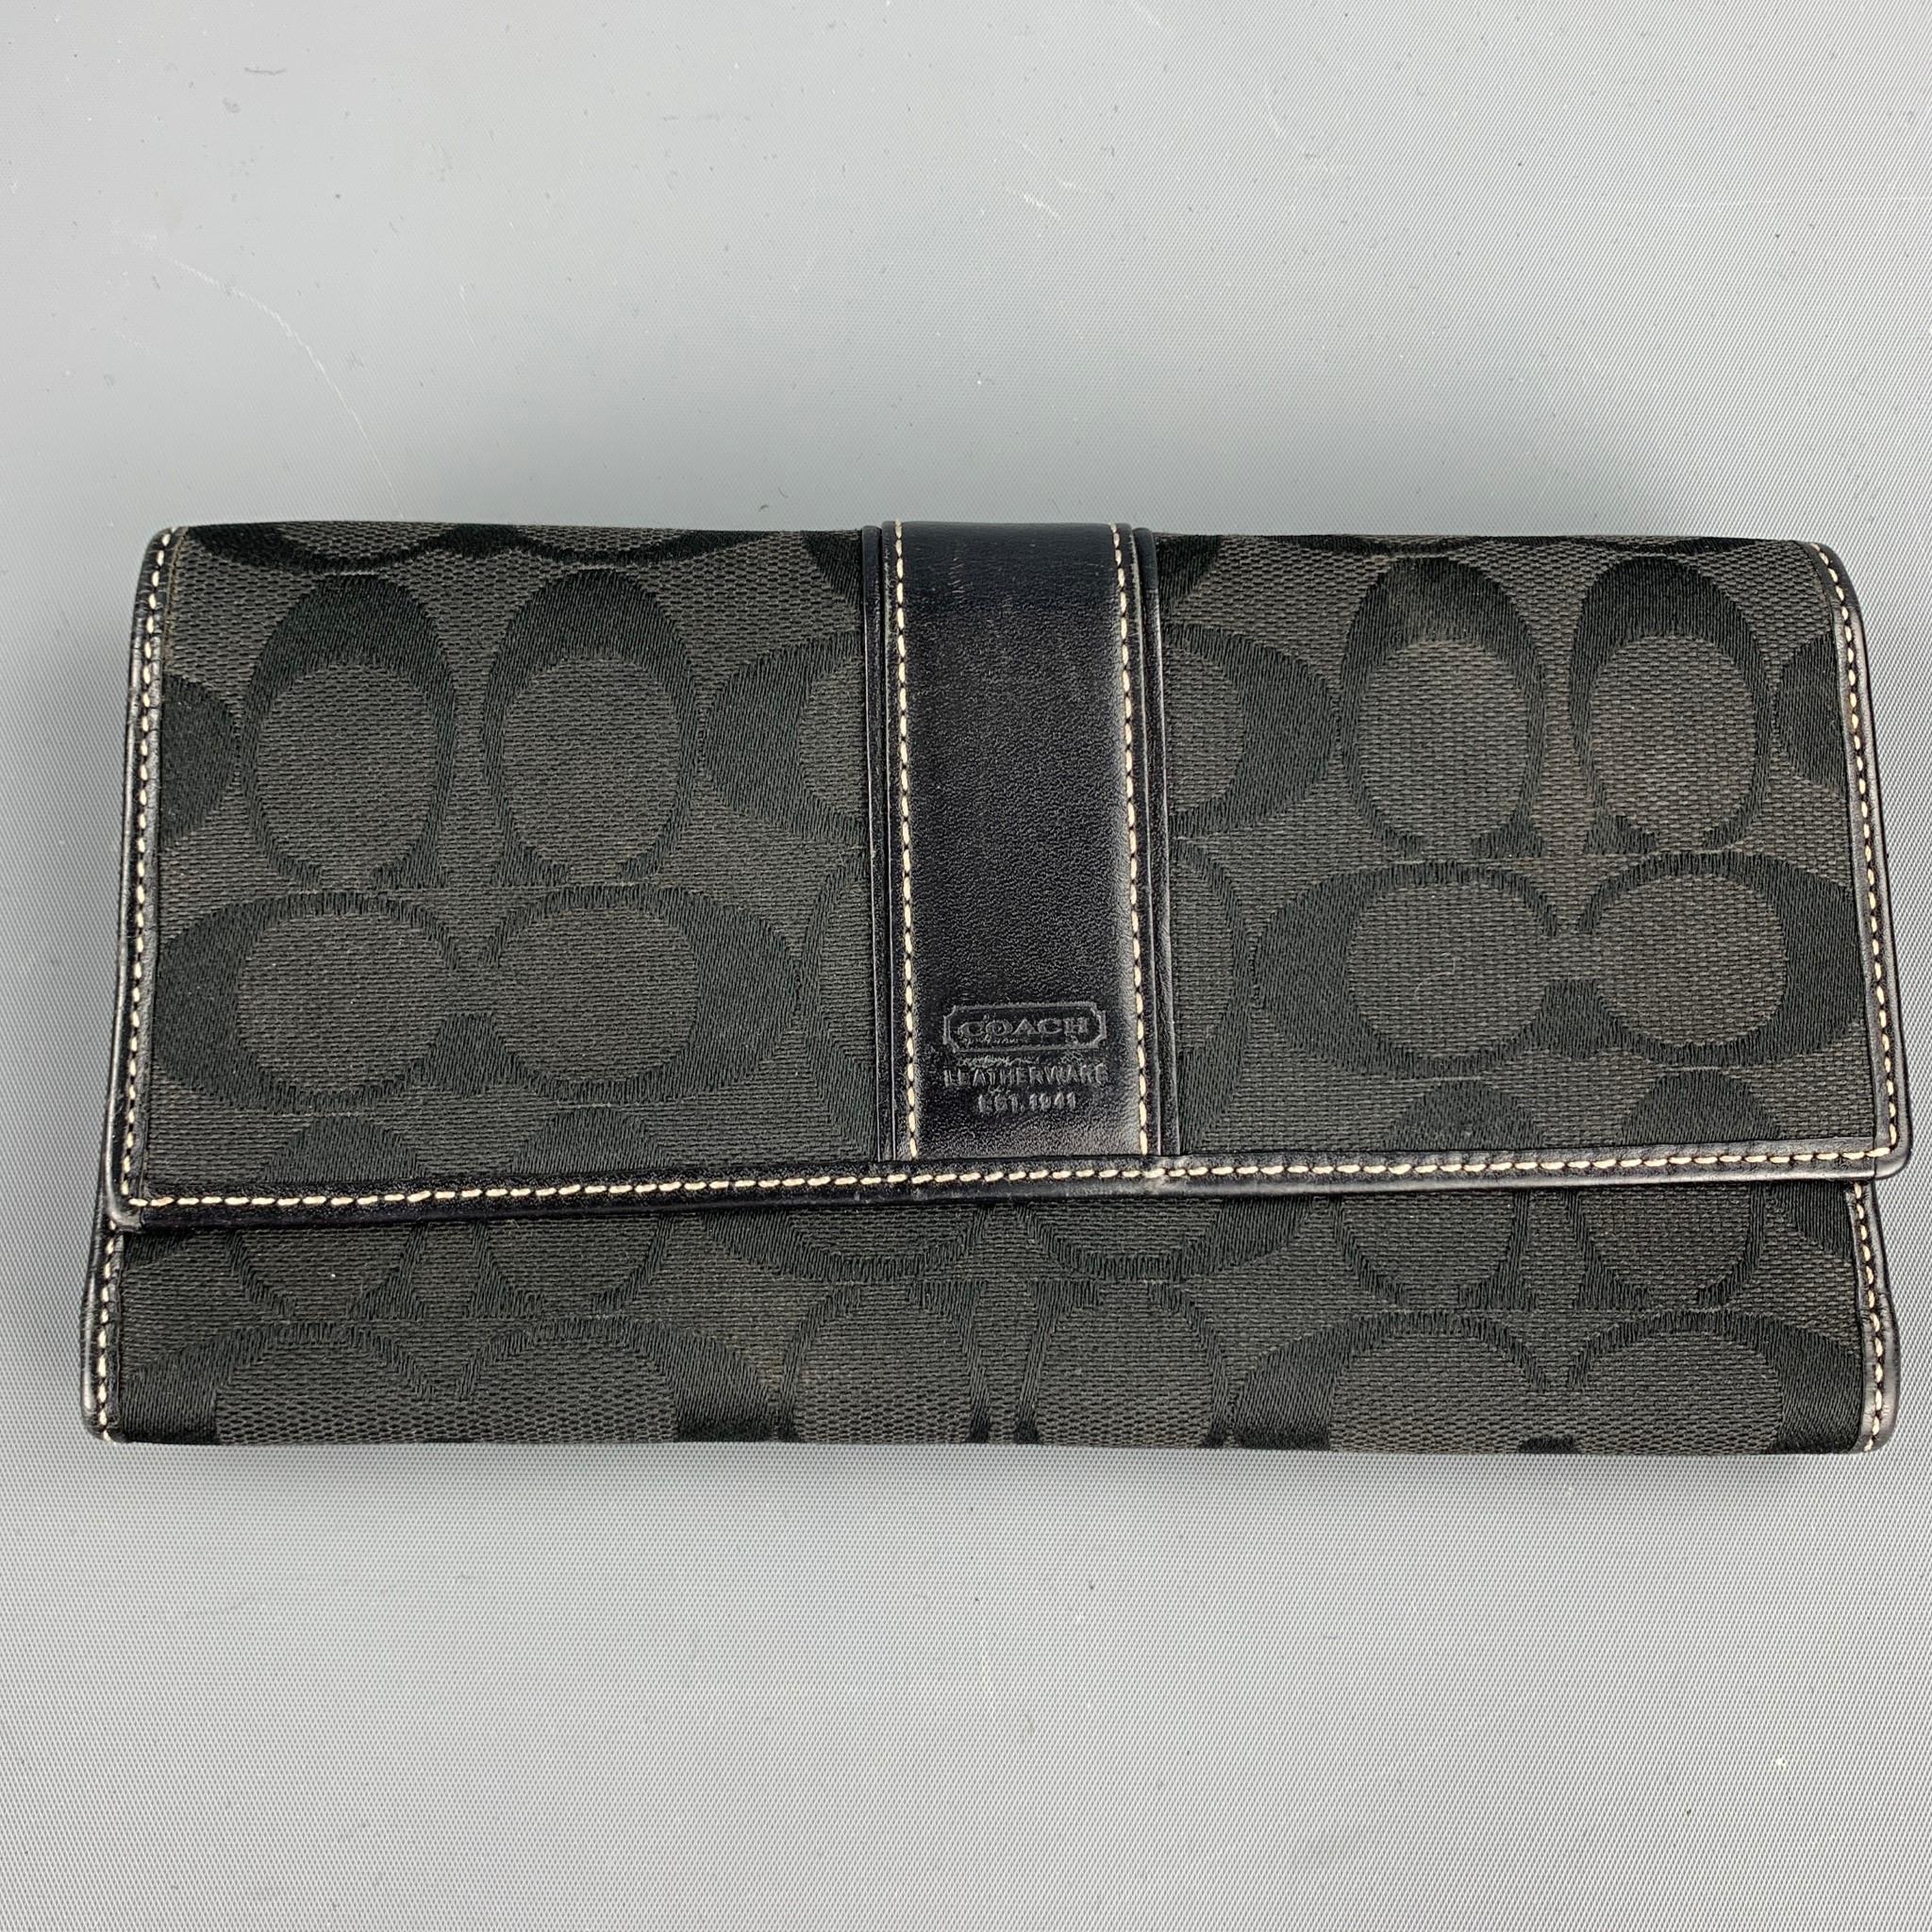 COACH Black Monogram Canvas Top Handles Handbag 5